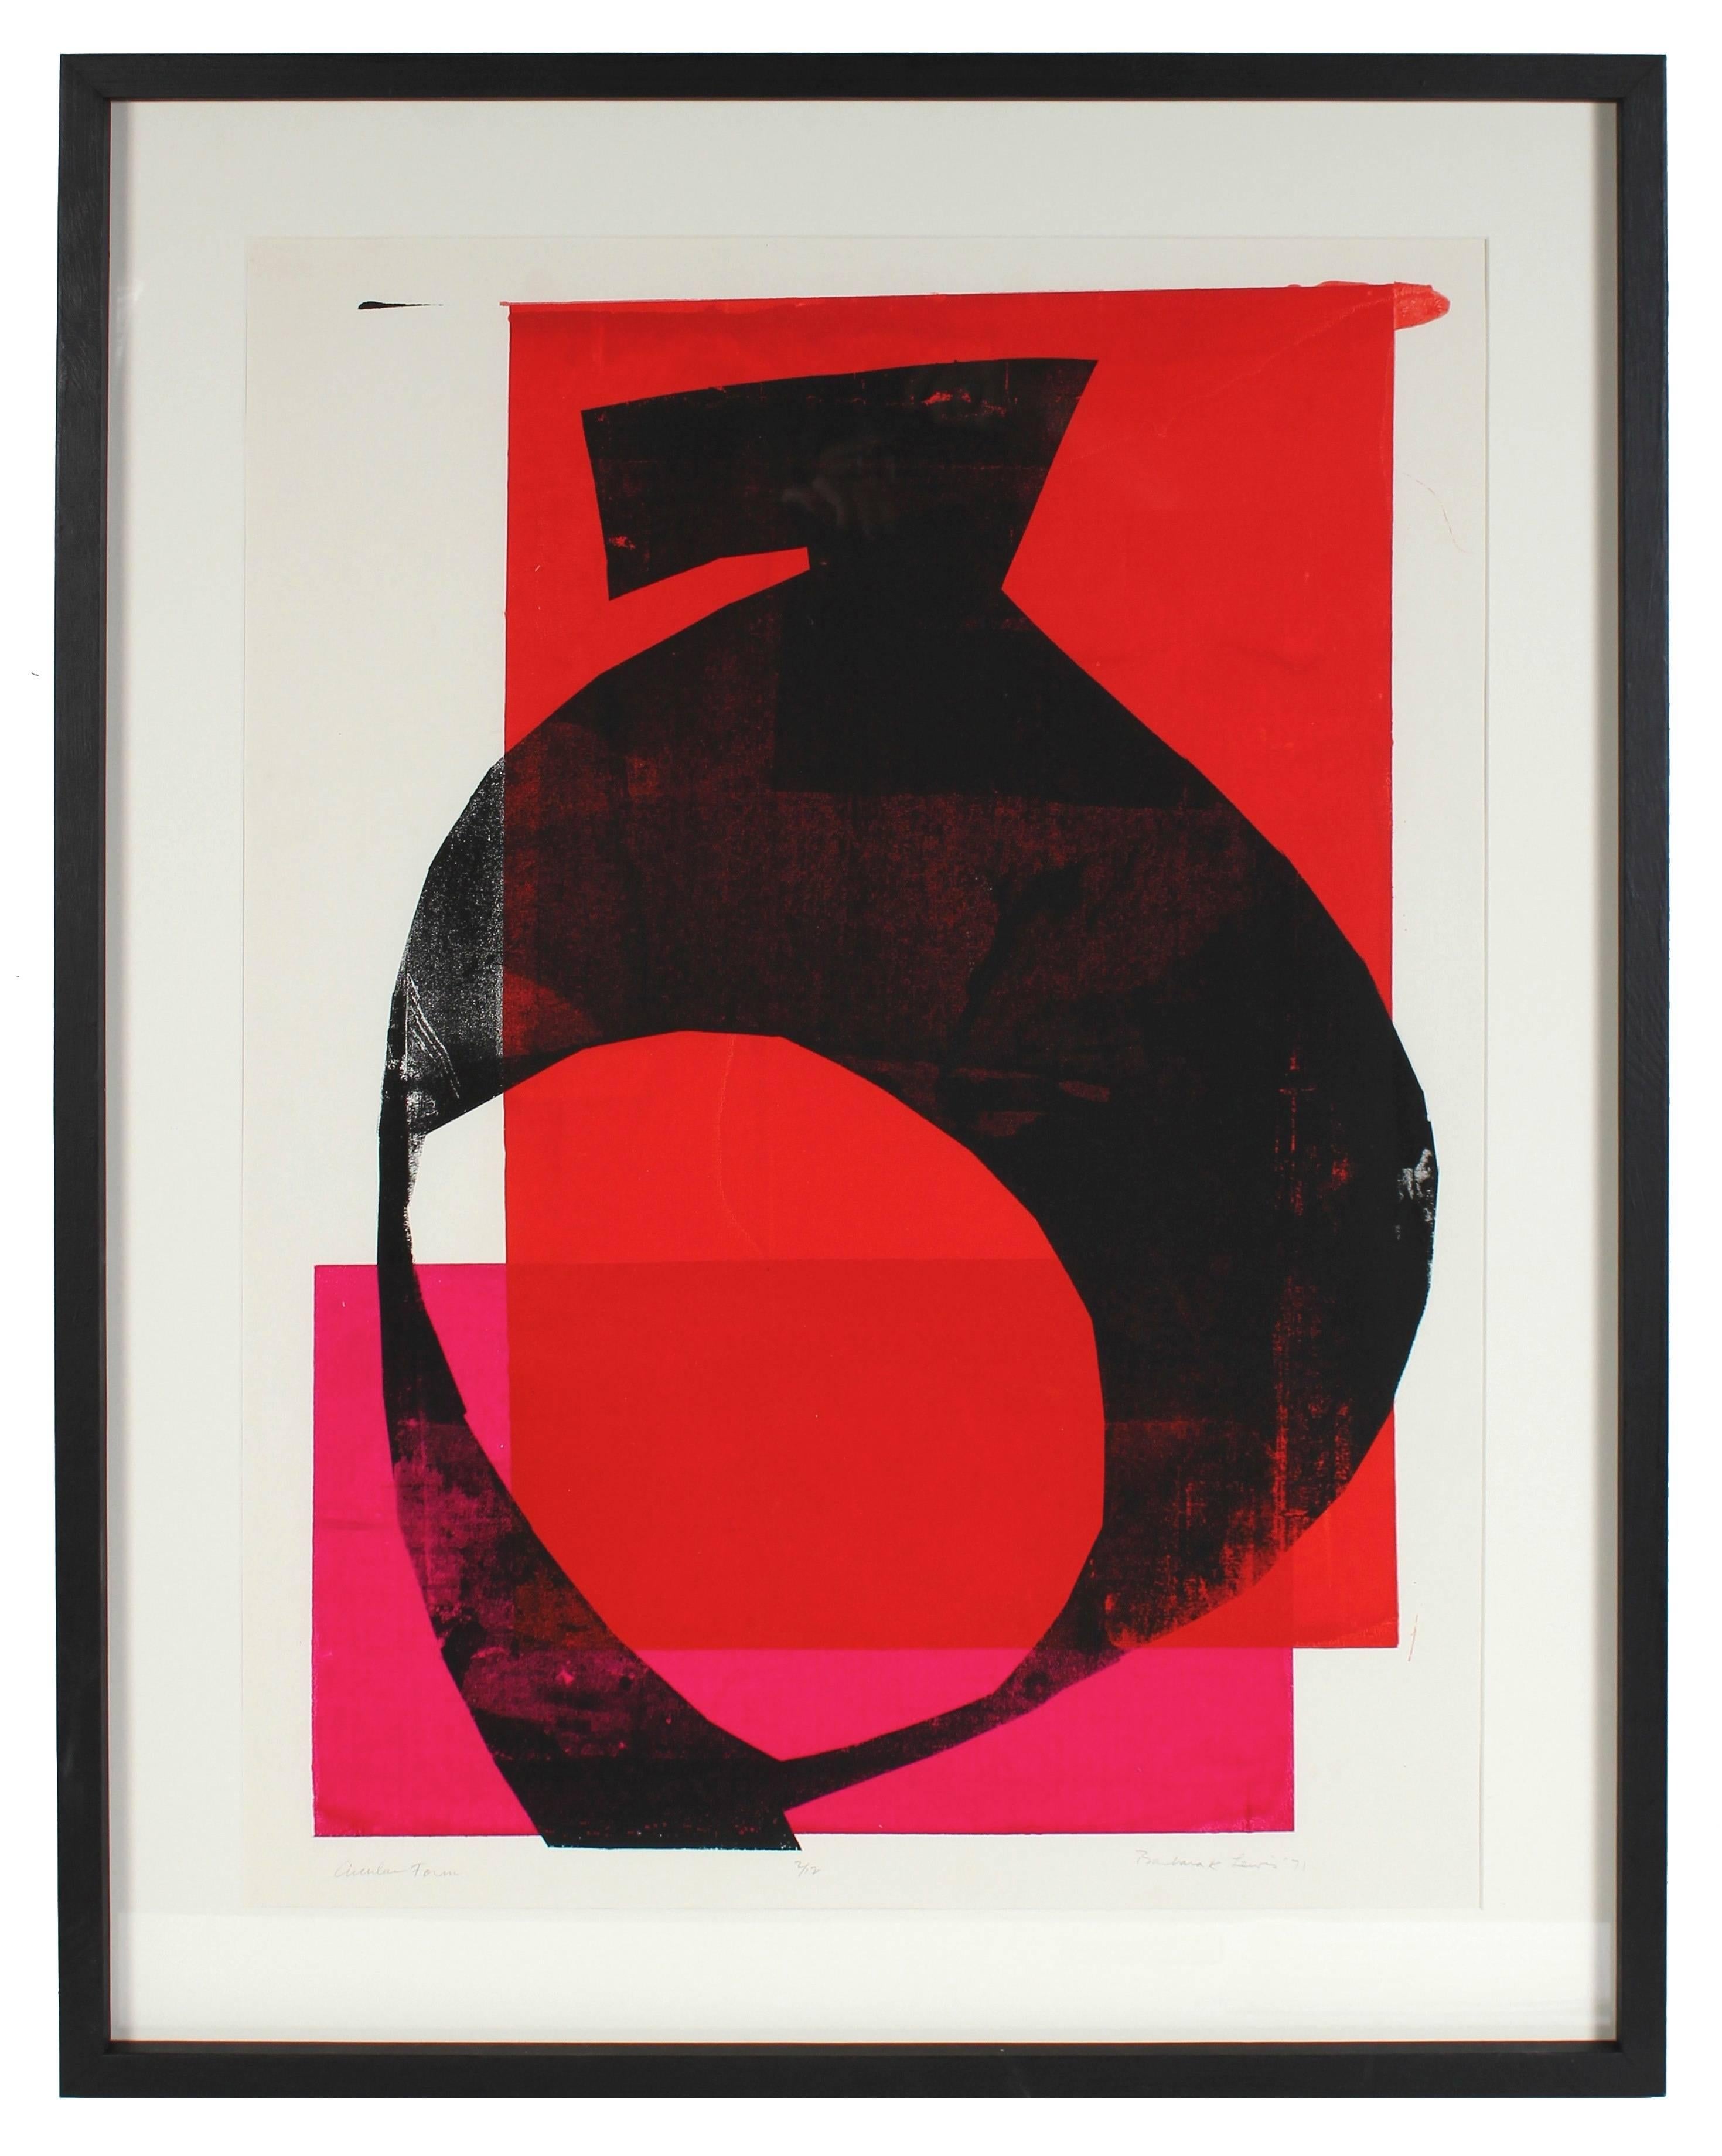 Barbara Lewis Abstract Print - "Circular Form" Large Abstract Serigraph, 1971